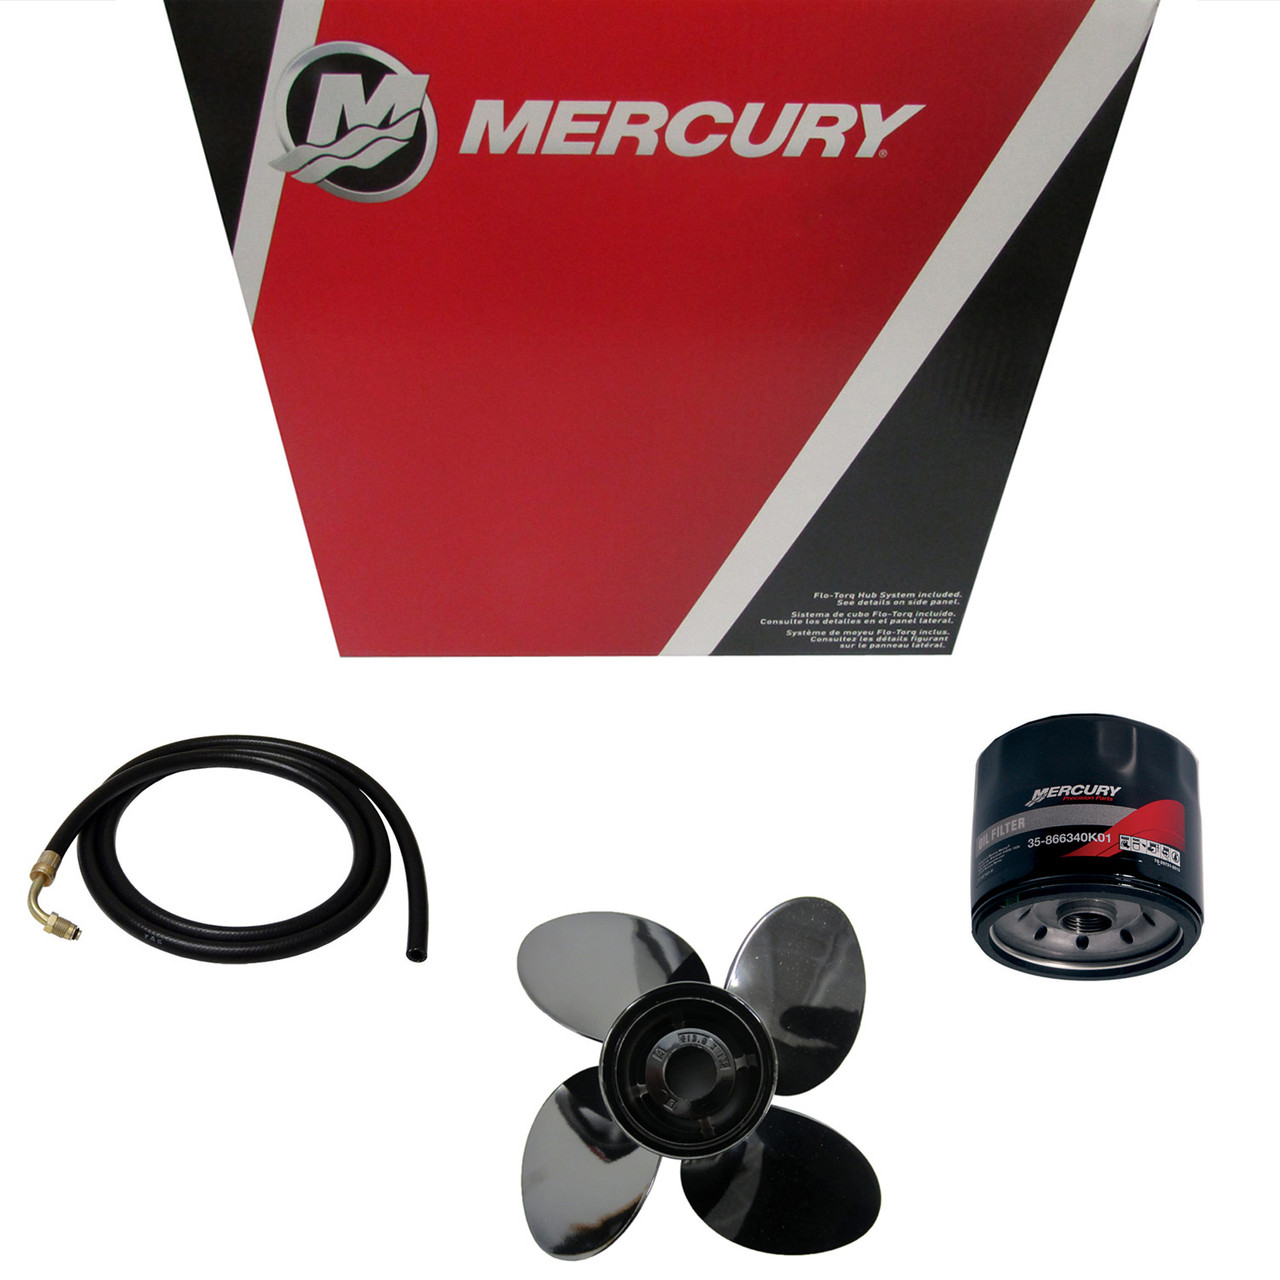 Mercury Marine / Mercruiser New OEM Driveshaft, 881938